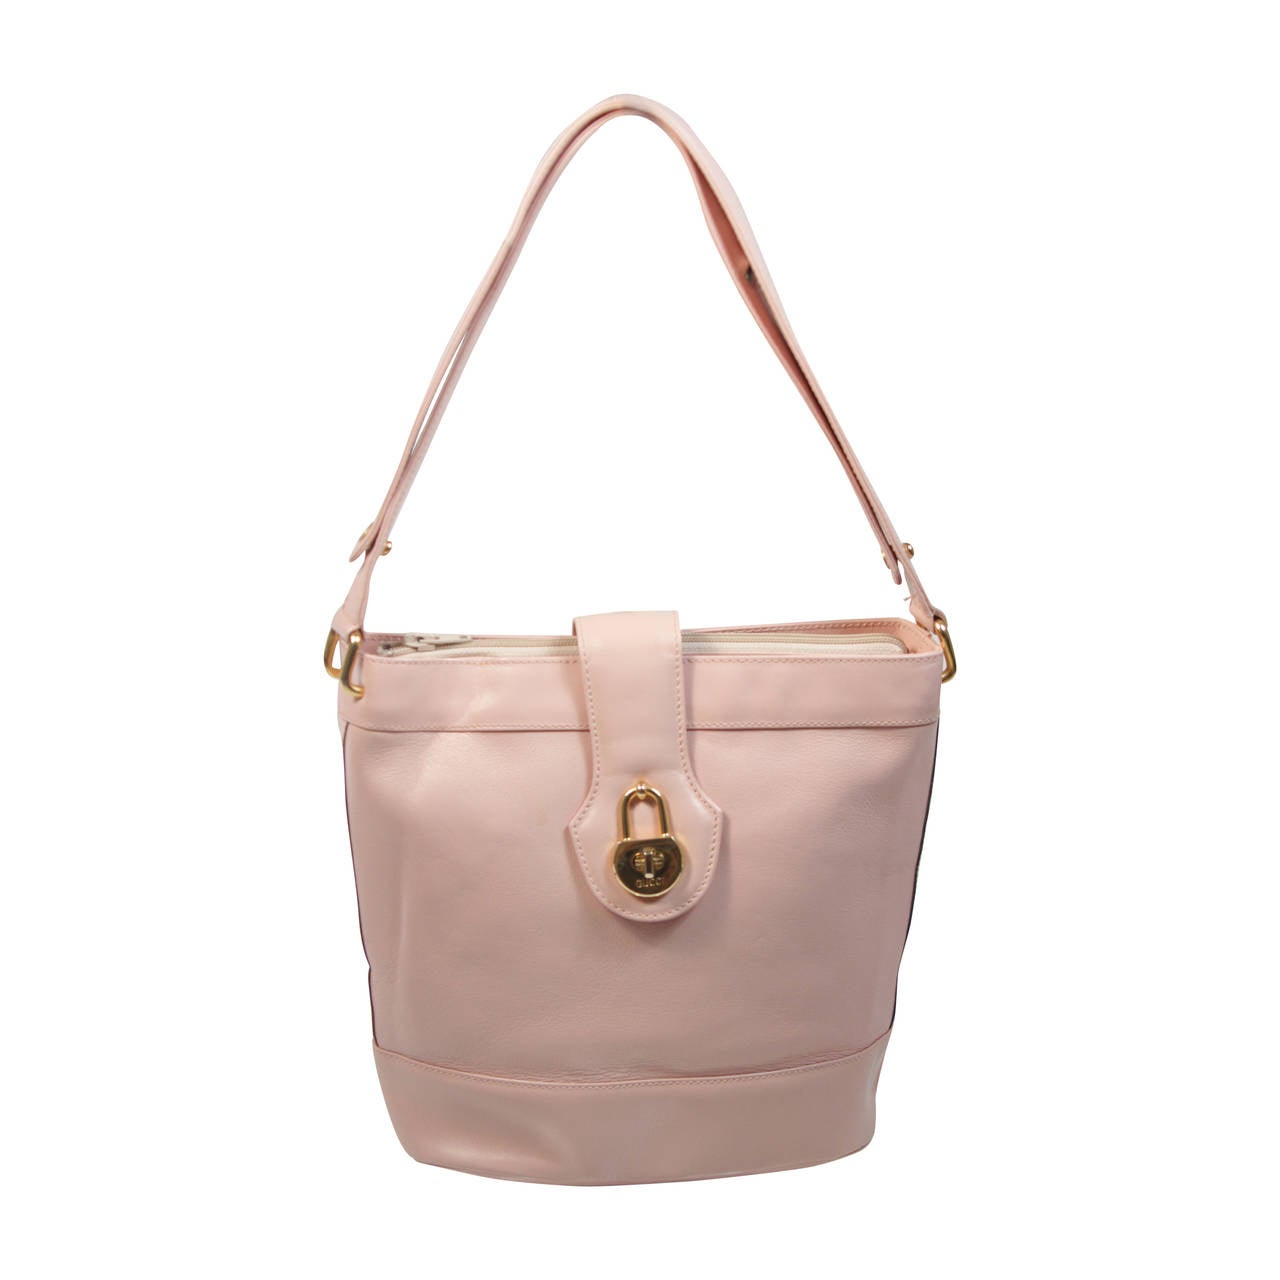 Gucci Vintage Pastel Pink Leather Shoulder Bag with Adjustable Strap at 1stdibs